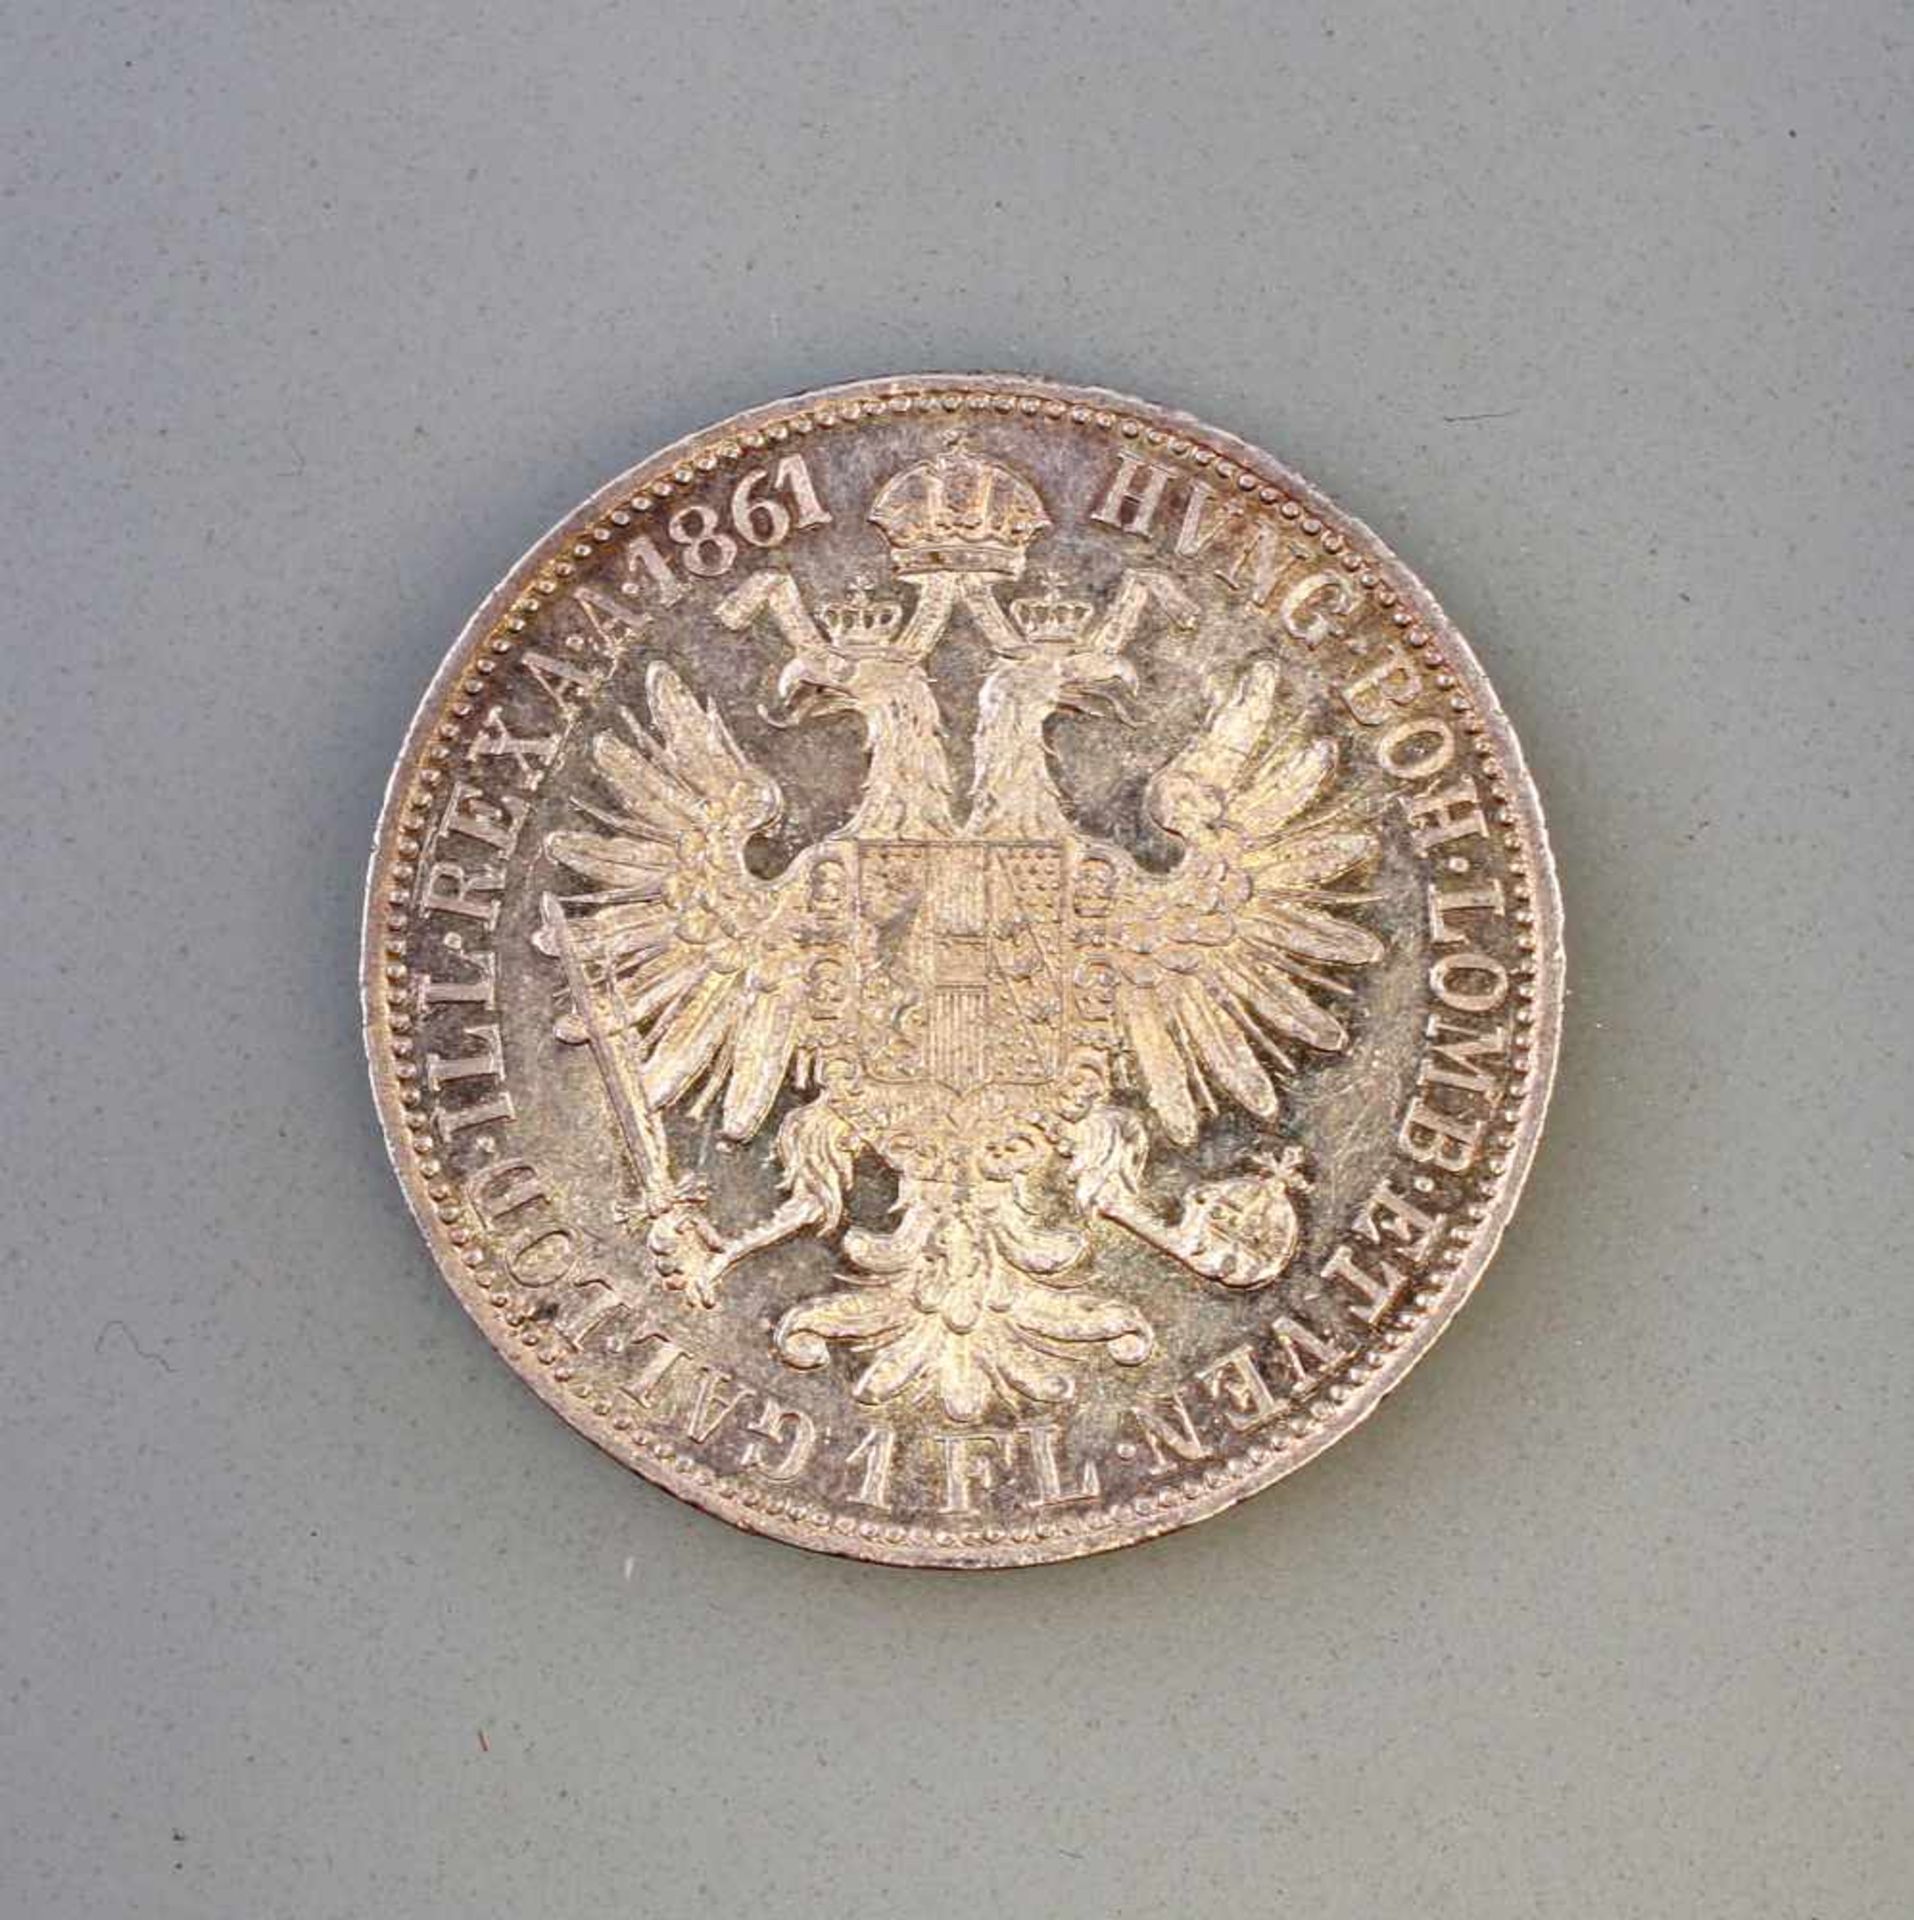 1 Florin 1861 Silber-Münze Franz Joseph I Österreich900er Silber, ca. 12 g, Zustand vz - Bild 2 aus 2